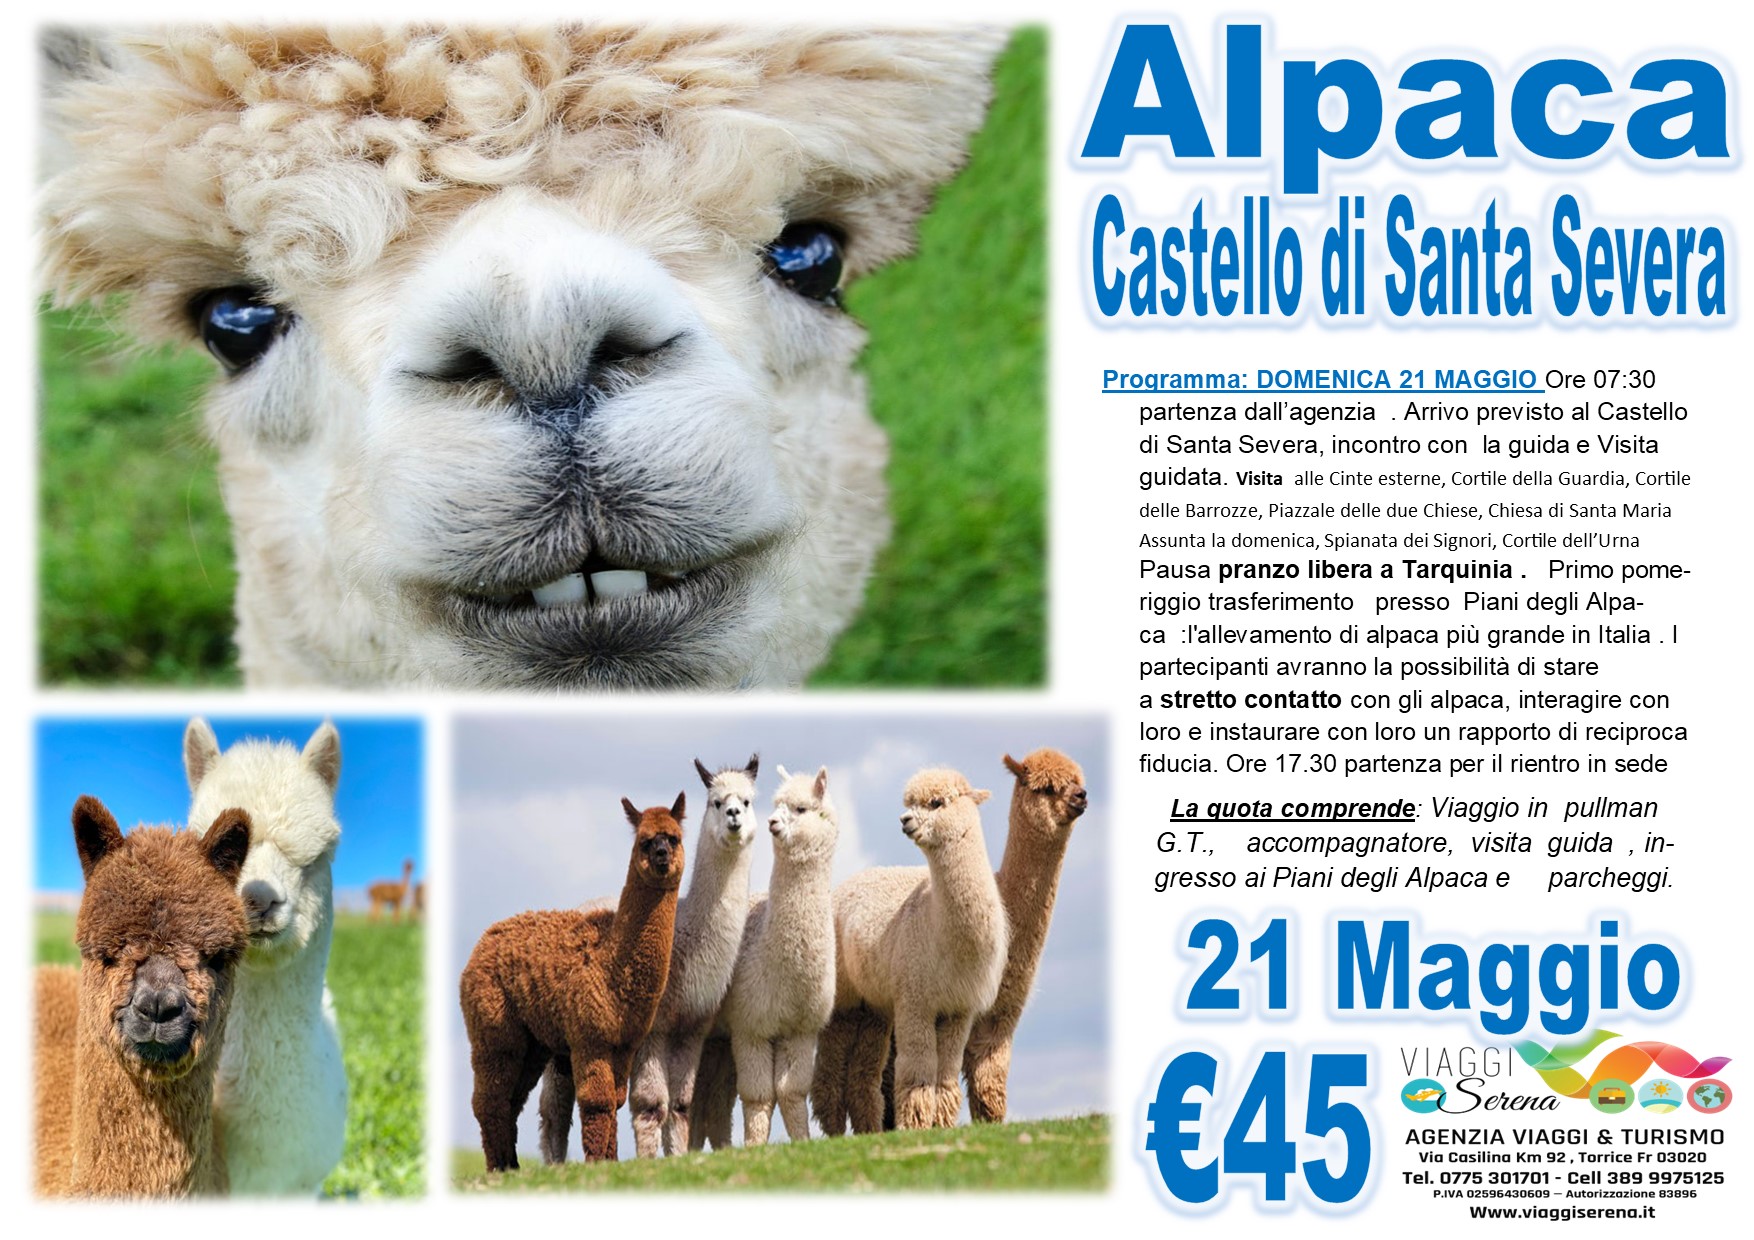 Viaggi di Gruppo: ALPACA & Castello di Santa Severa 21 Maggio € 45,00